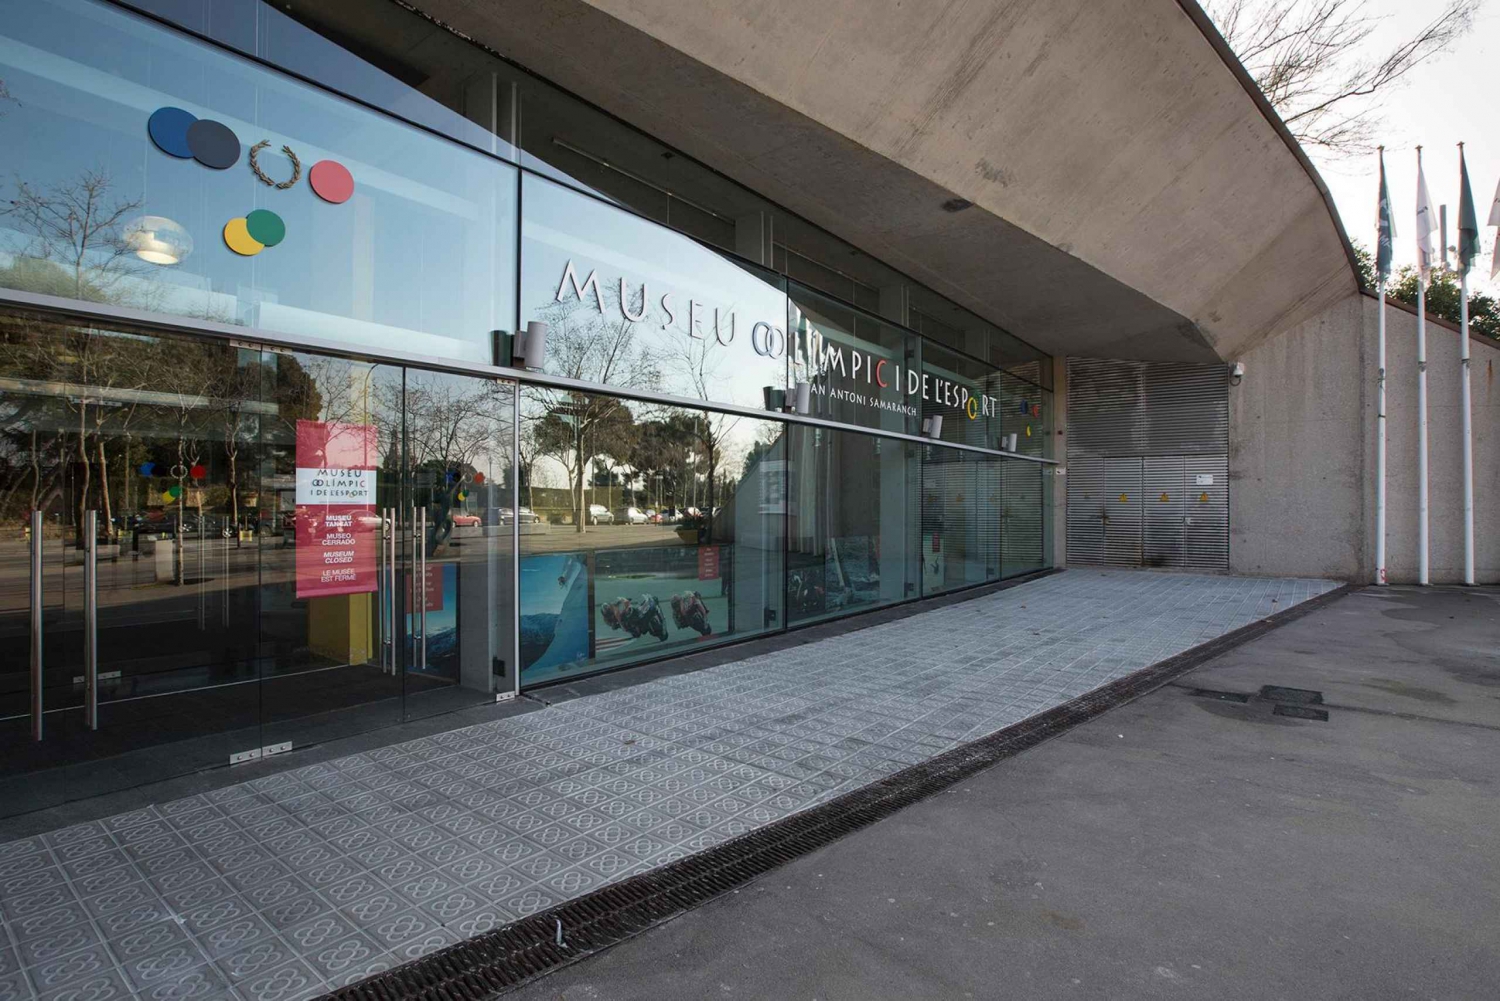 Barcelona: Entrébiljett till Olympiska museet och Sportmuseet